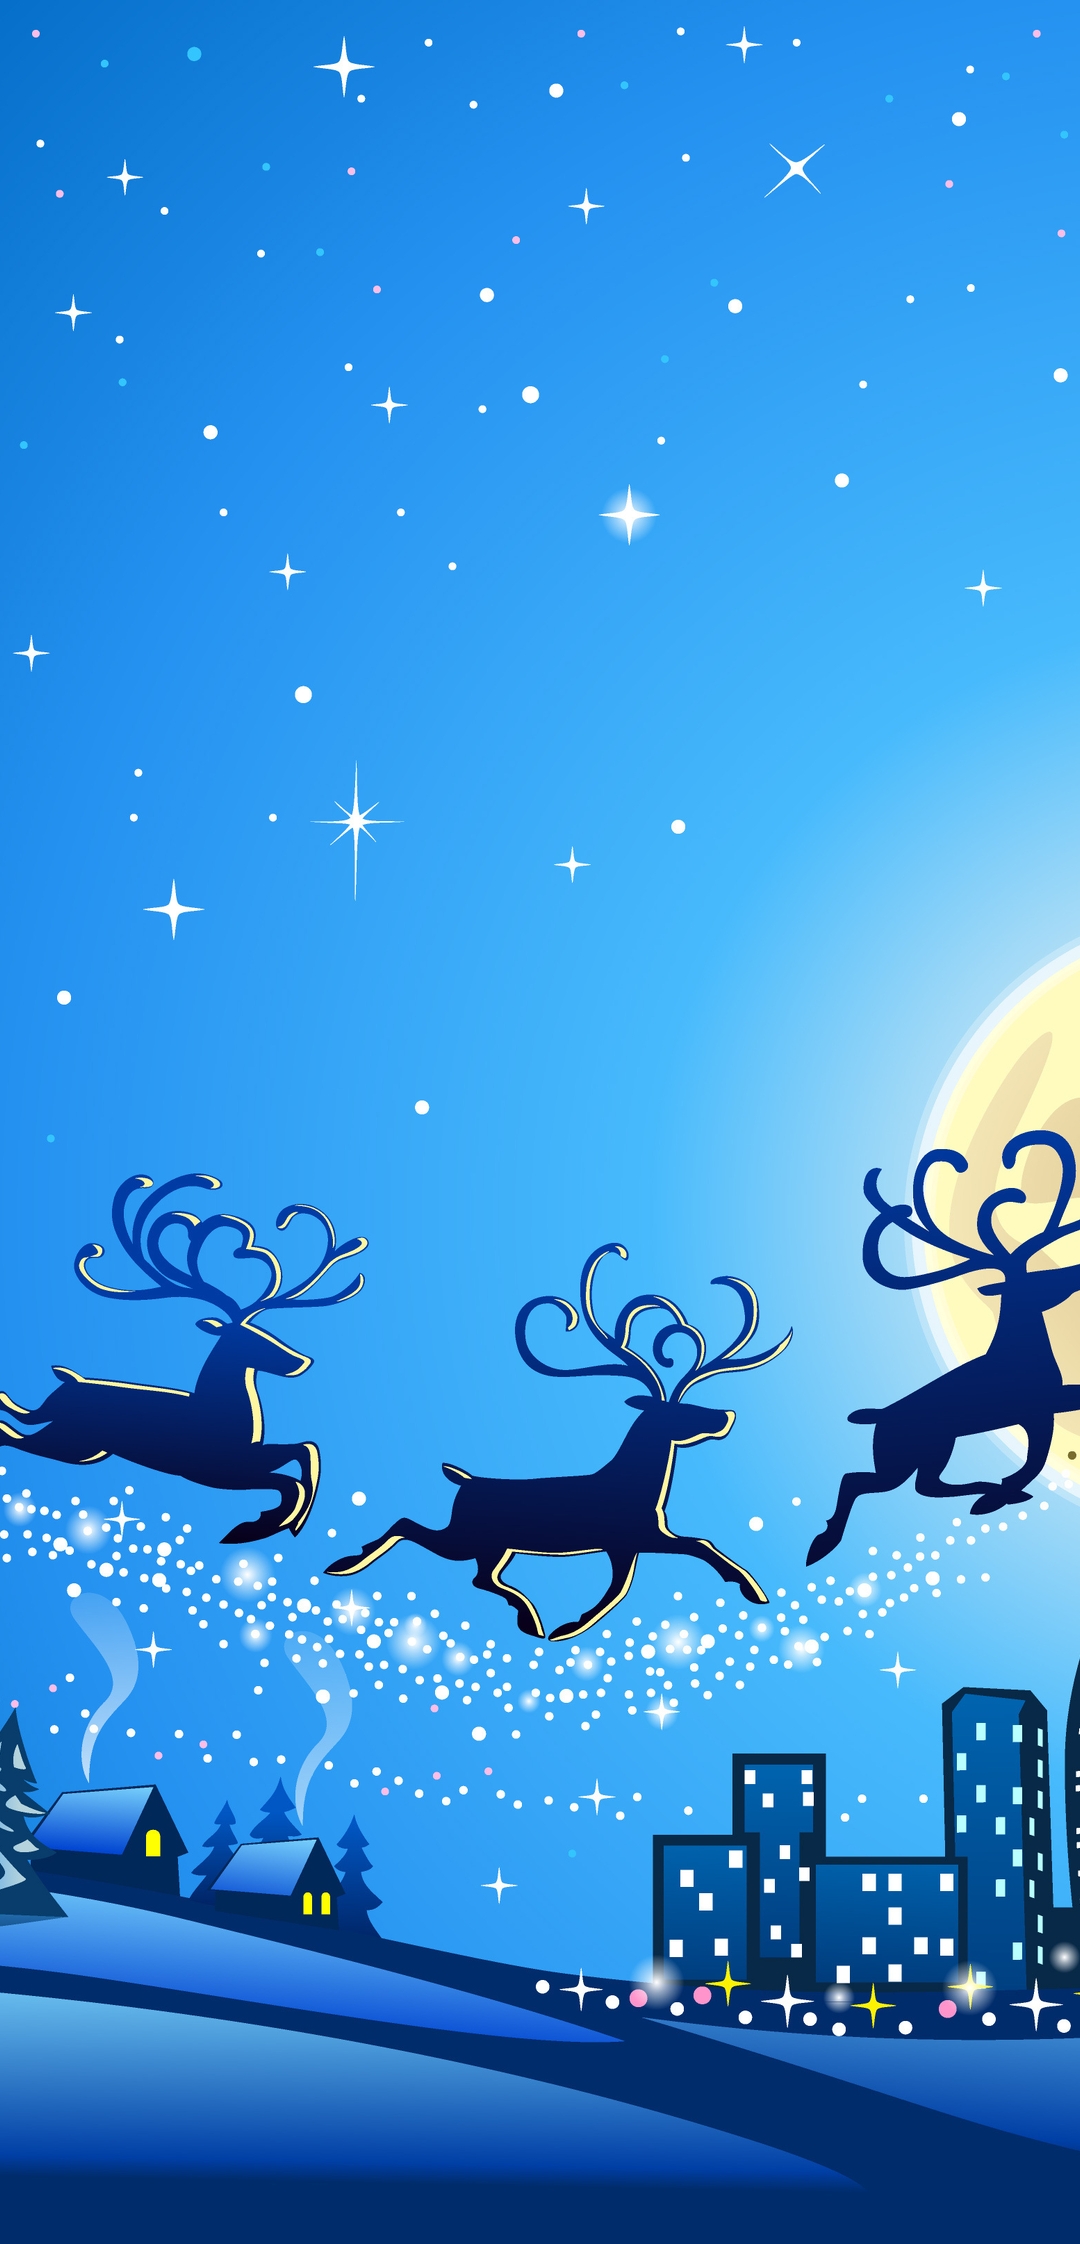 Картинка: Санта Клаус, олени, сани, ночь, луна, зима, рождество, город, деревья